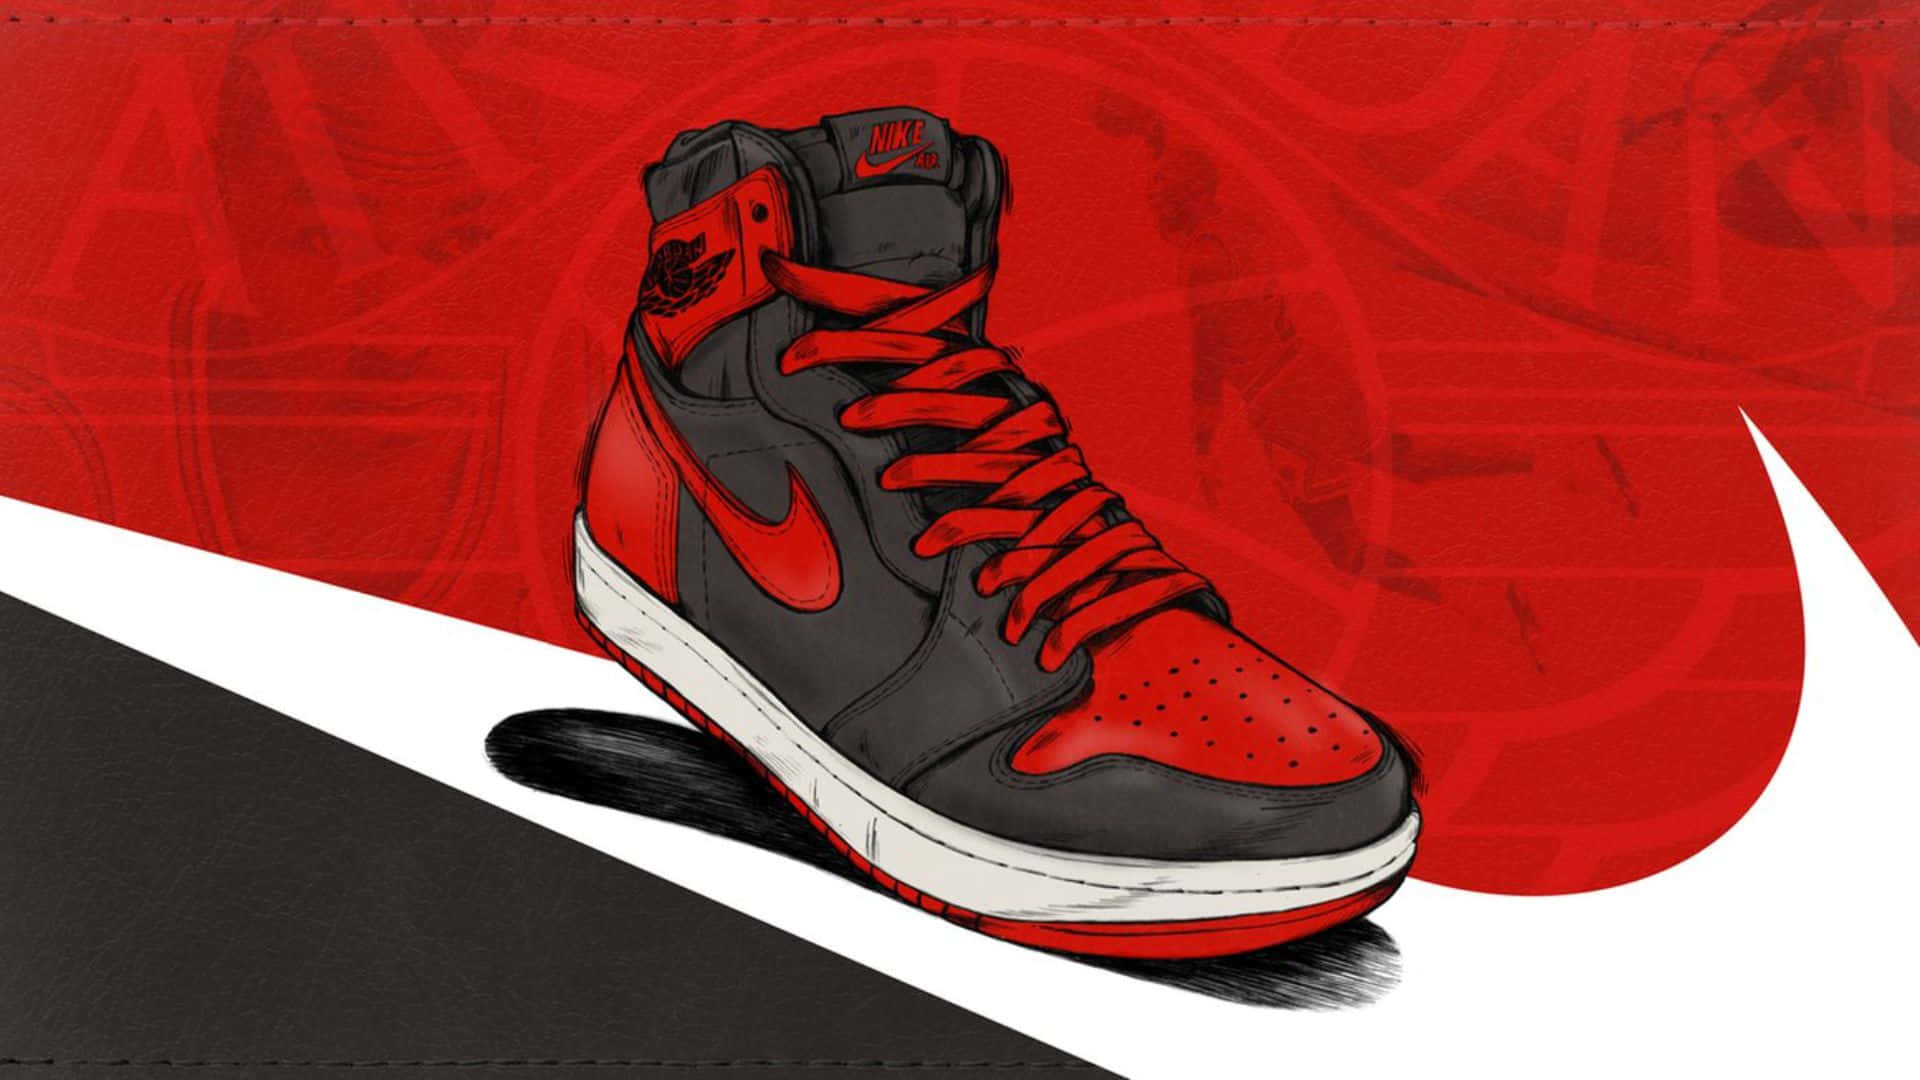 Animated Nike Jordan Air 1 Shoe Wallpaper